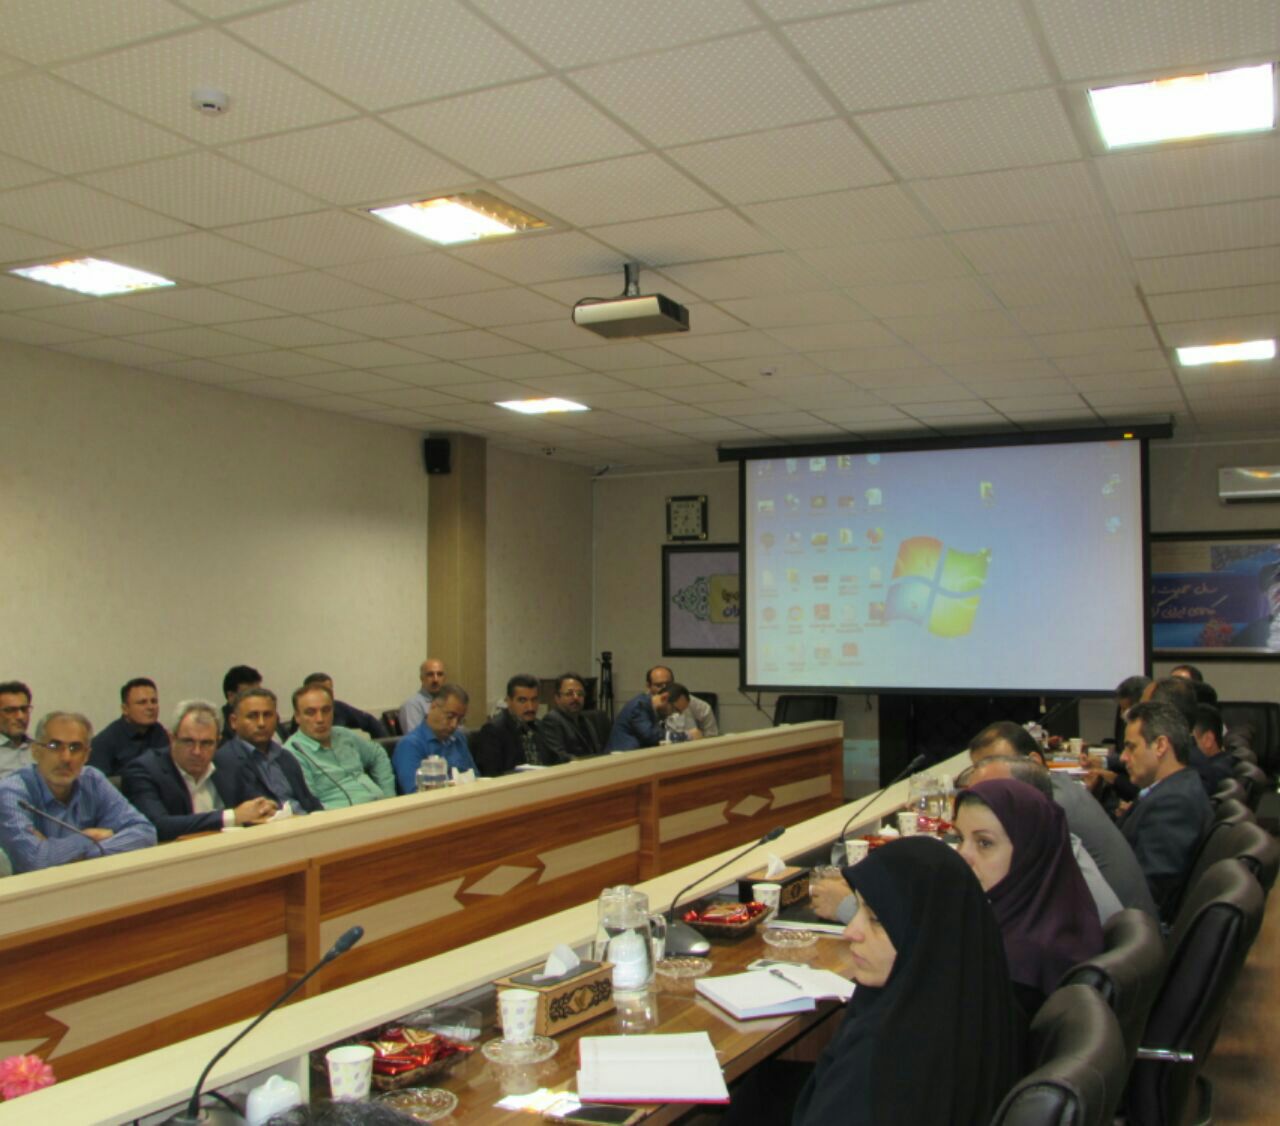 برگزاری کارگاه آموزشی مقابله با تهدیدات بیوتروریسم در اداره کل پست استان گیلان